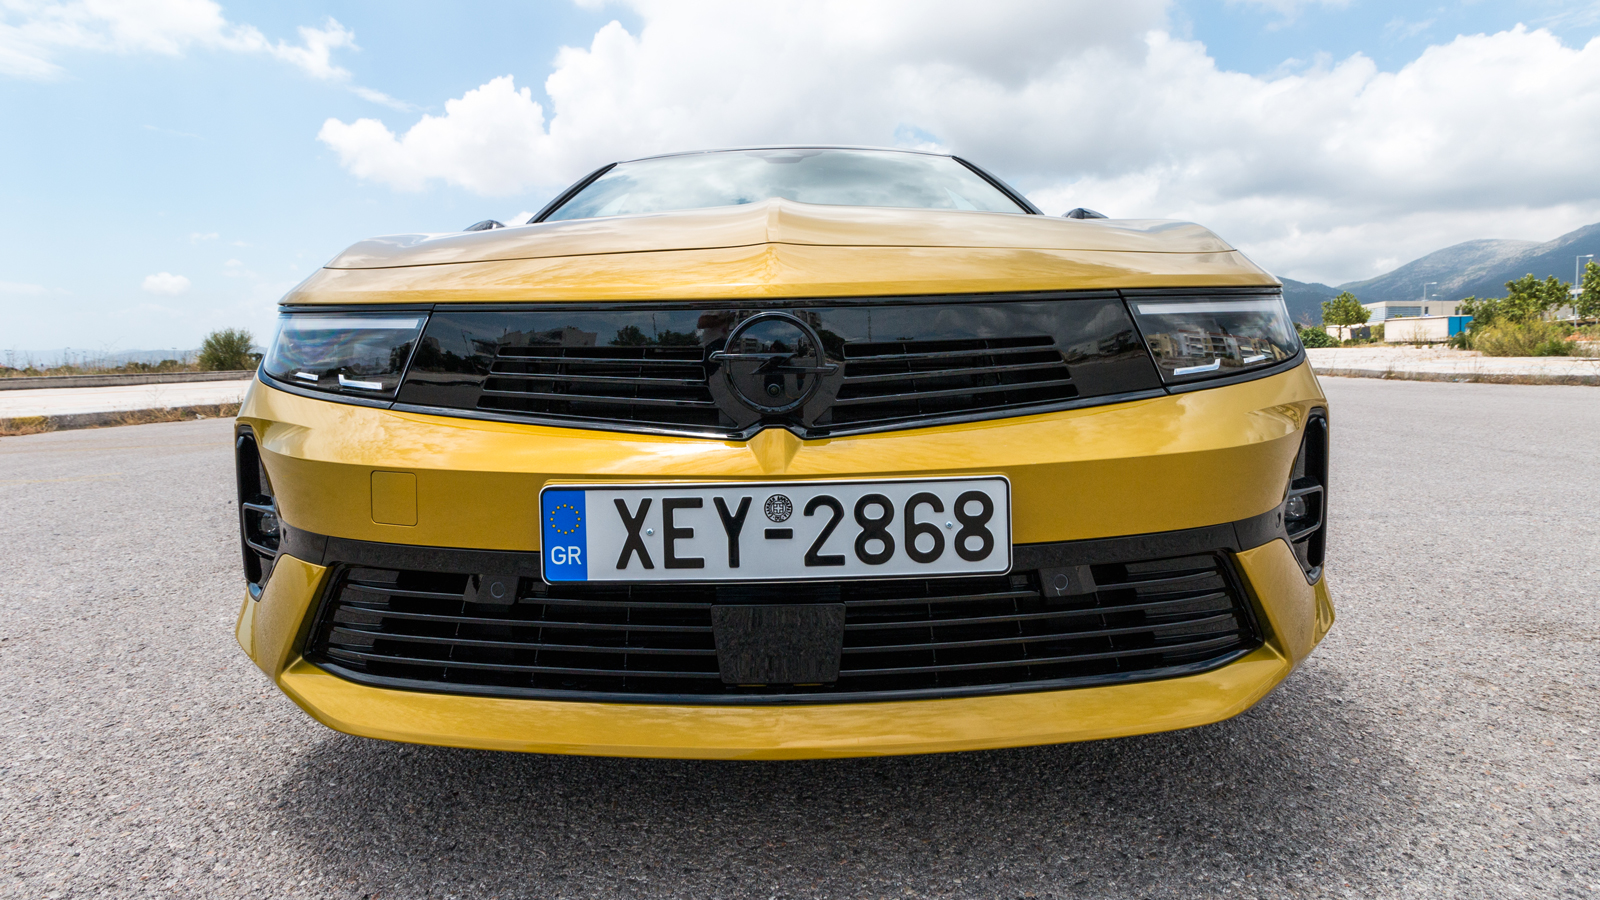 Μάσκα Opel Vizor, Full Led φωτιστικά σώματα, μυώδες μακρύ καπό και αθλητικός προφυλακτήρας συνθέτουν τη δυναμική εικόνα του μοντέλου.